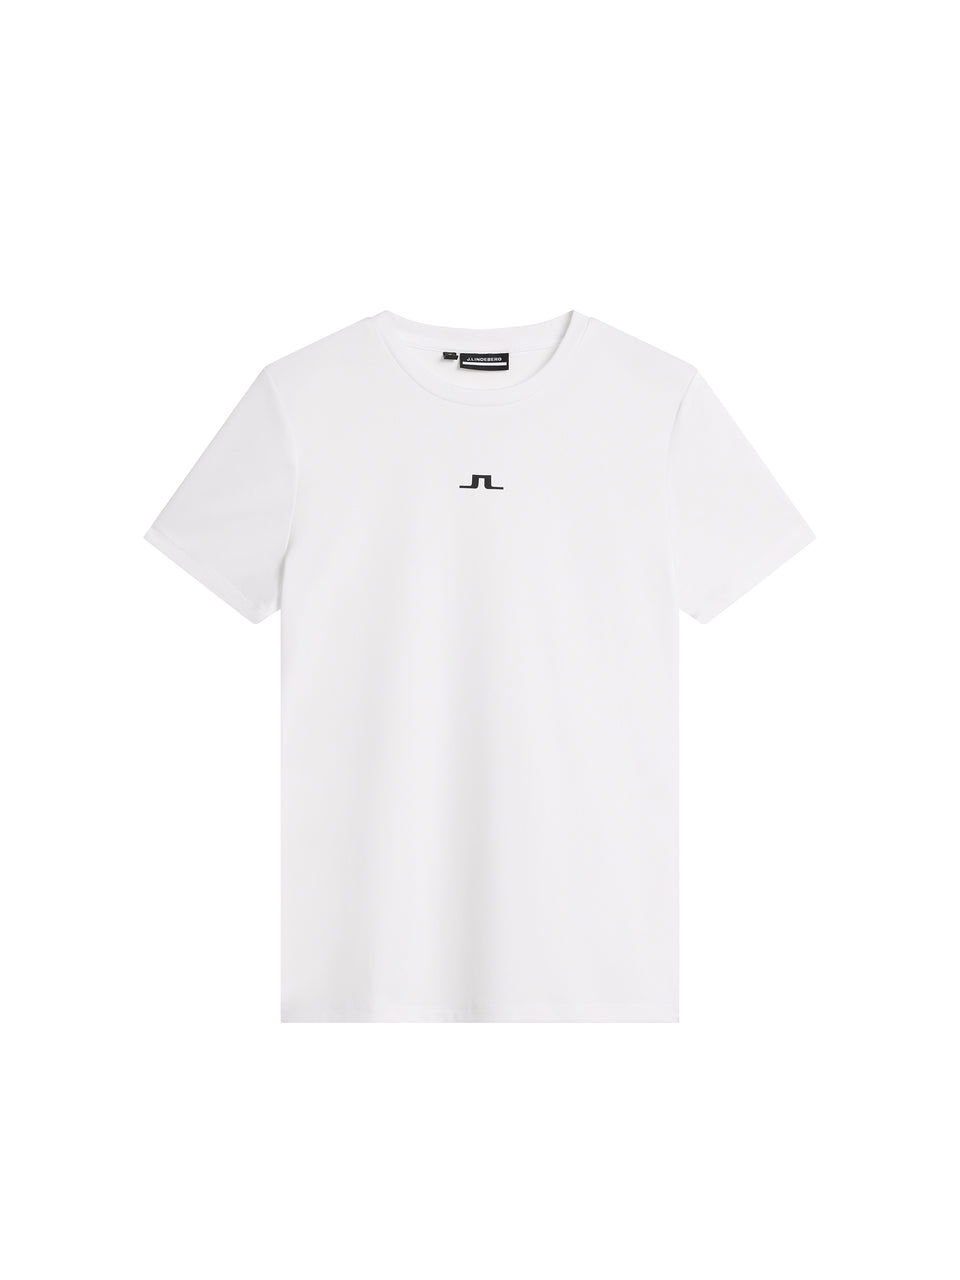 Ada T-shirt / White